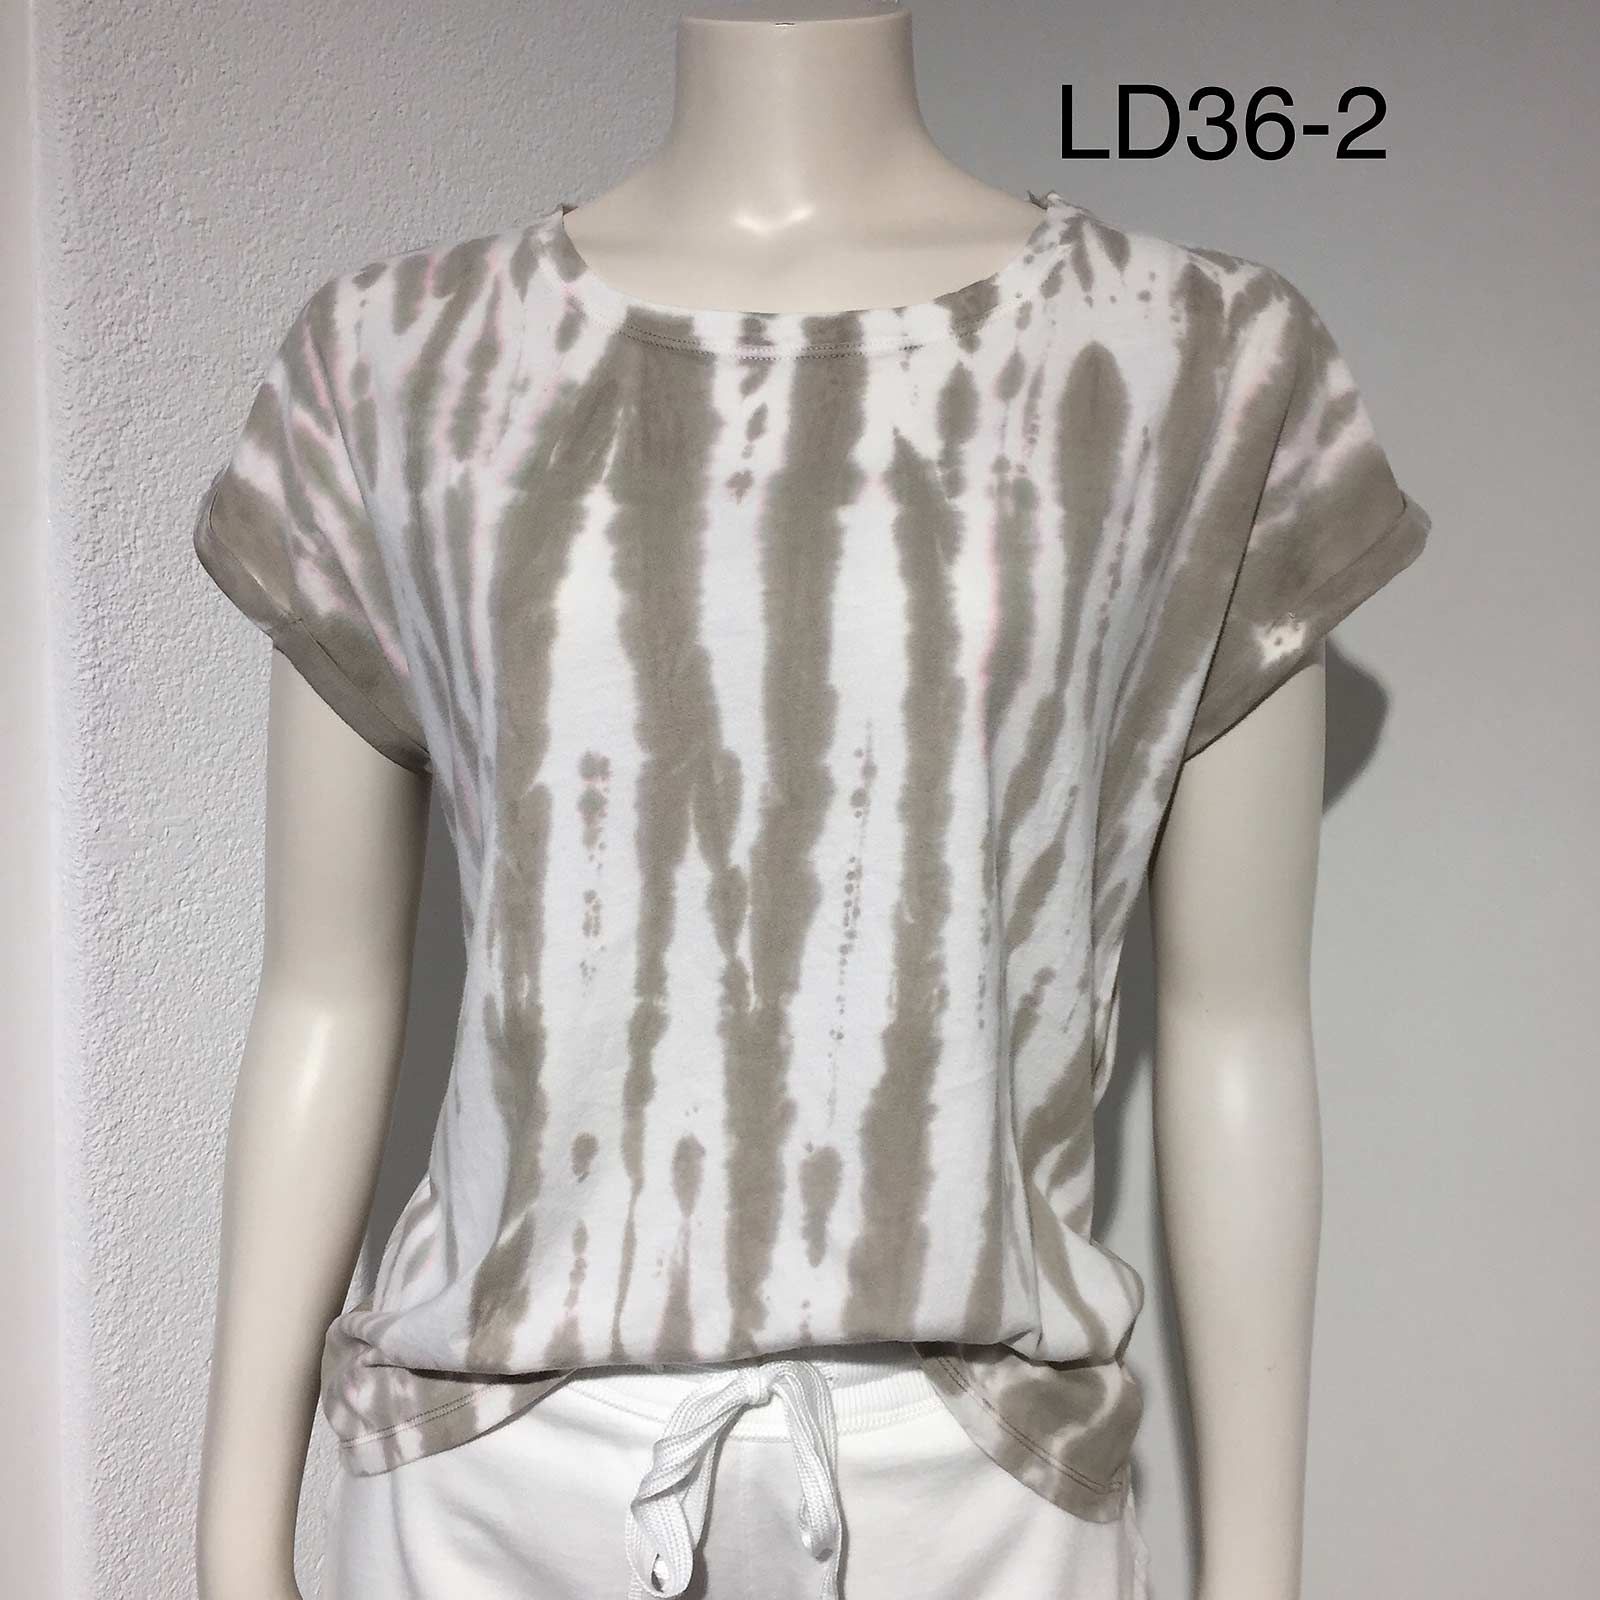 Damen – Look 36-2 | T-Shirt